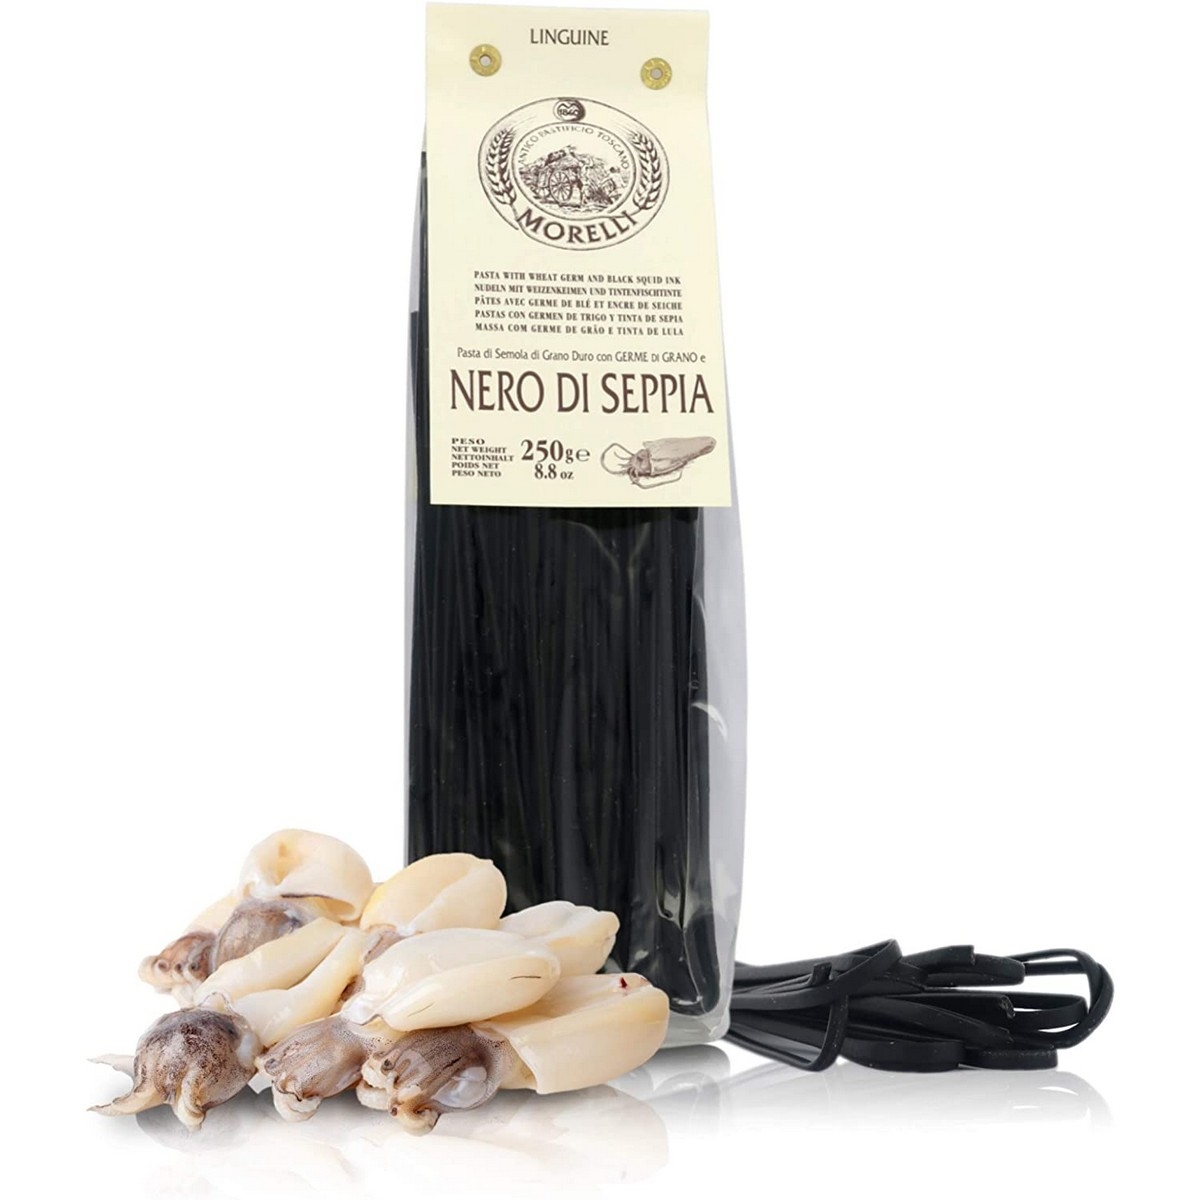 Antico Pastificio Morelli - Pasta Aromatizzata - Nero di Seppia - Linguine - 250 g